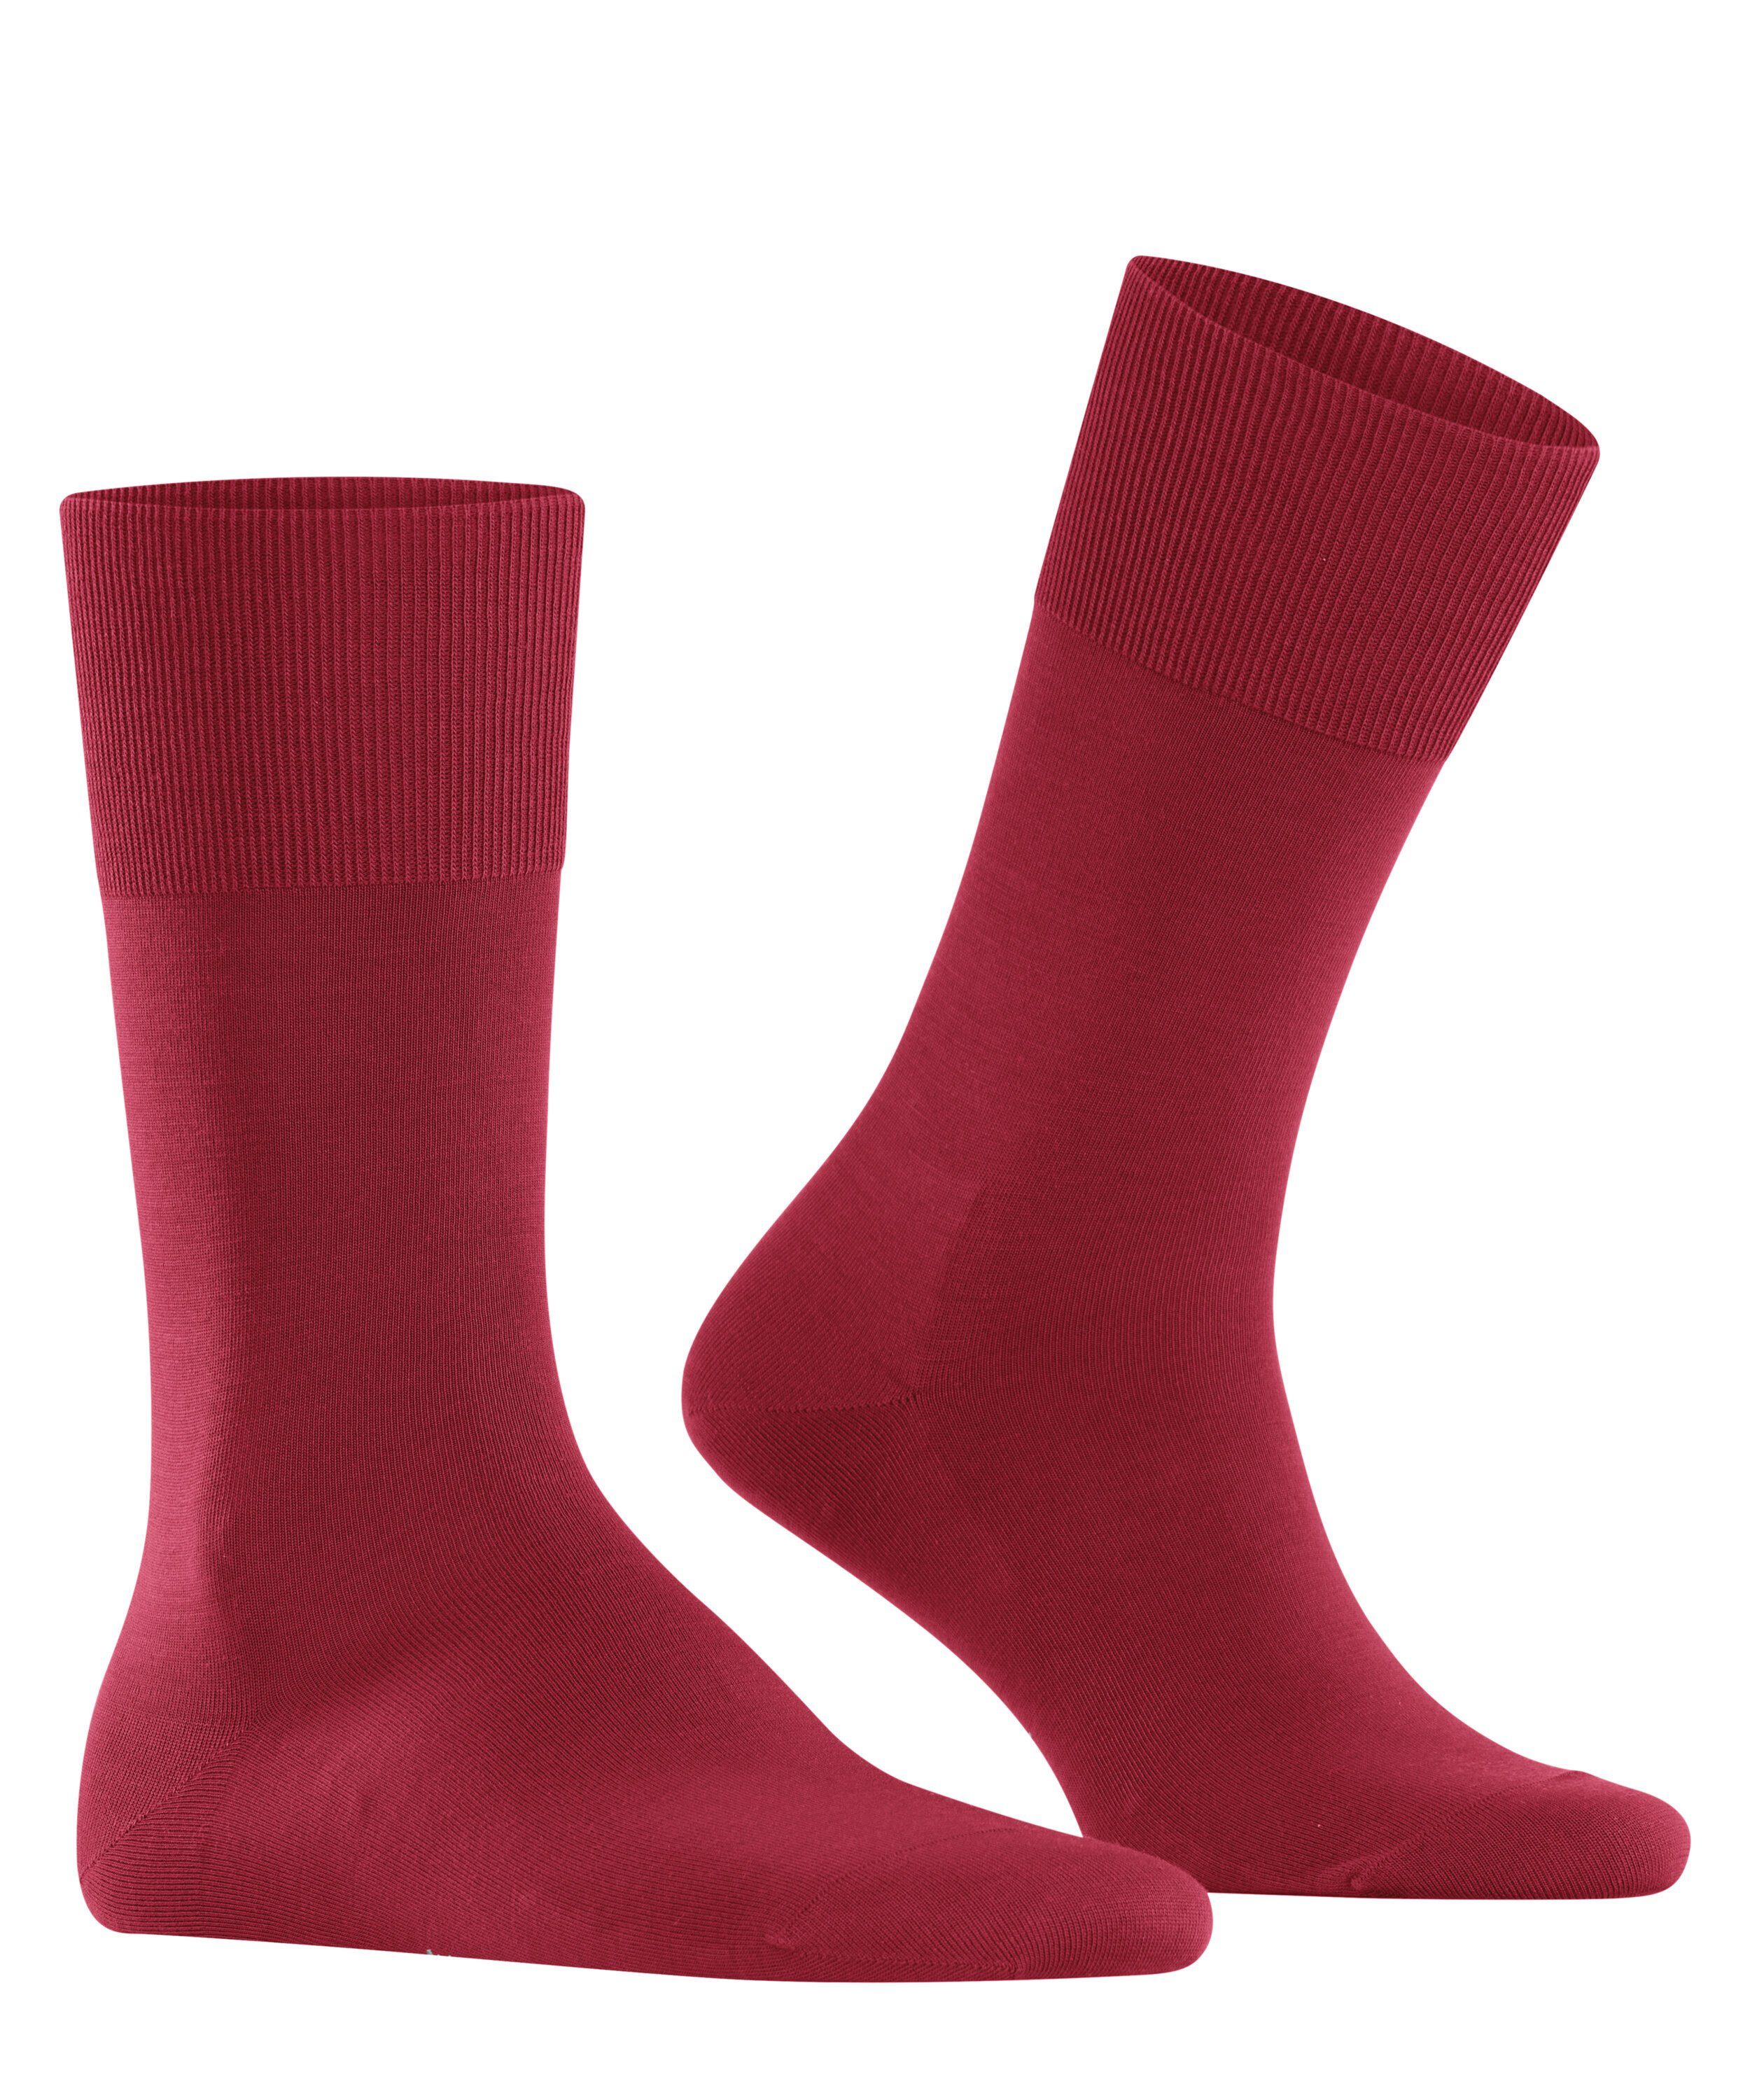 (1-Paar) FALKE (8228) Socken ClimaWool scarlet